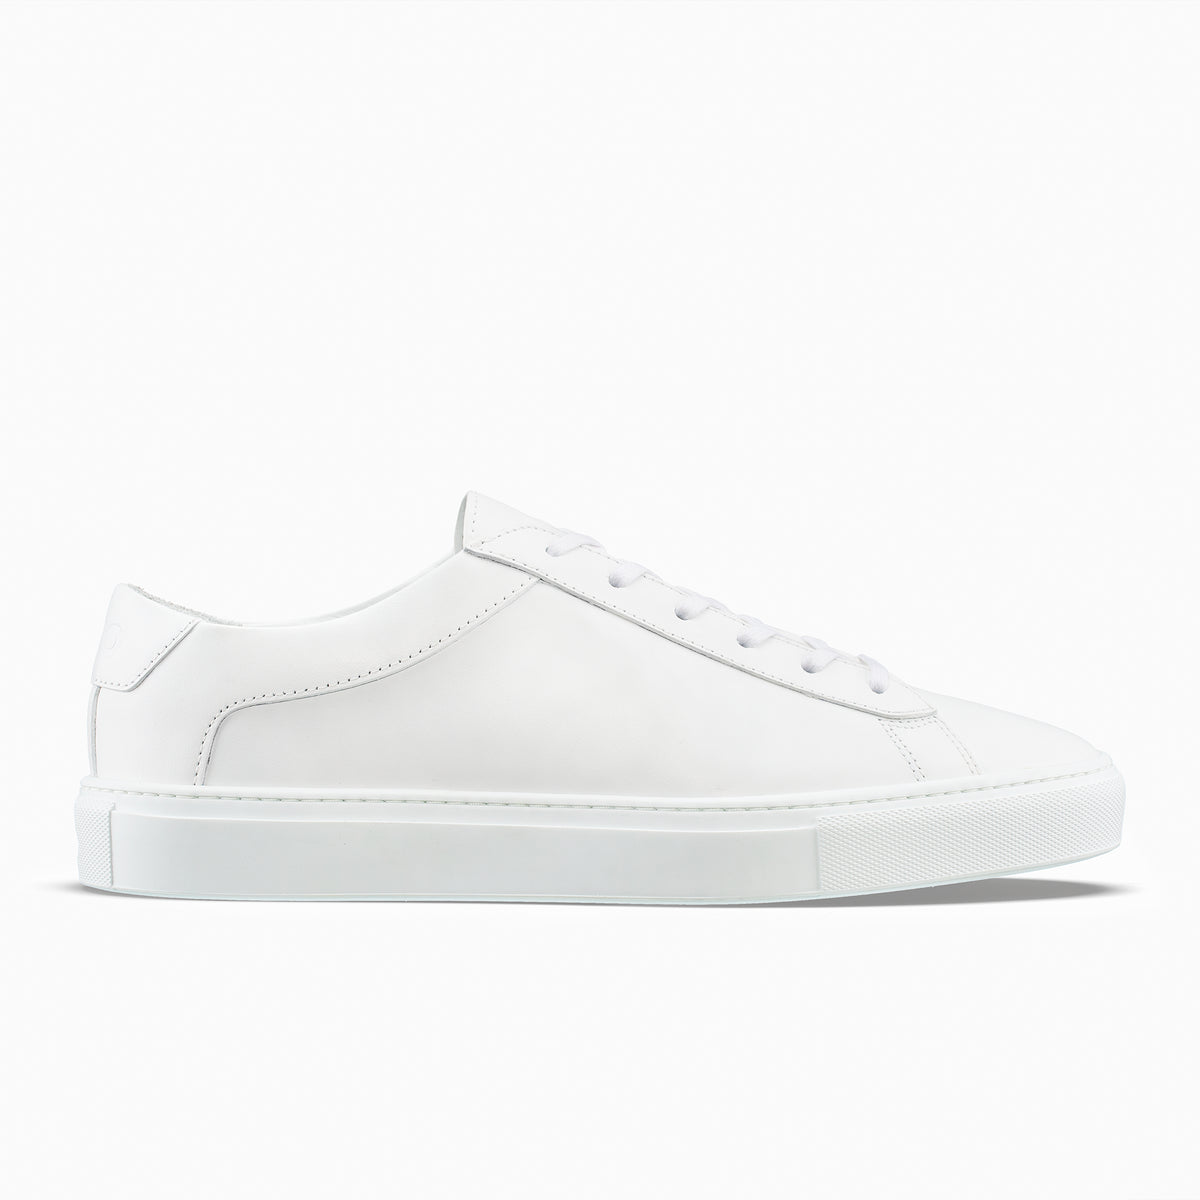 Koio Capri Men's Sneakers White | Singapore-270156